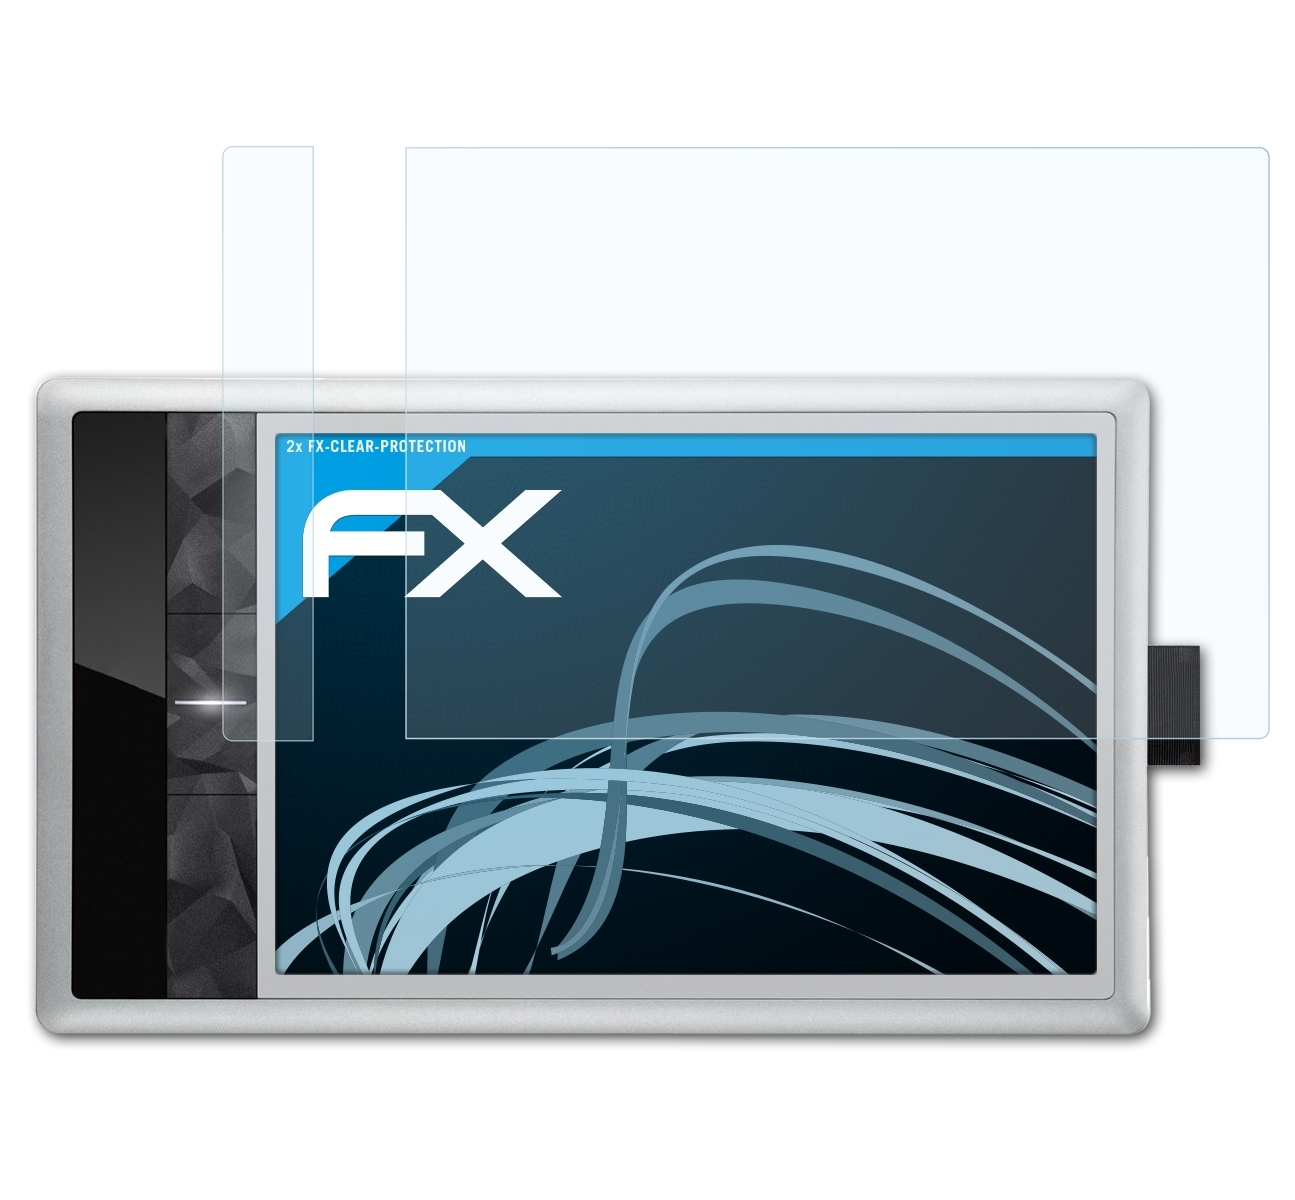 ATFOLIX 2x FX-Clear Medium Fun Pen&Touch Bamboo (3.Generation)) Displayschutz(für Wacom